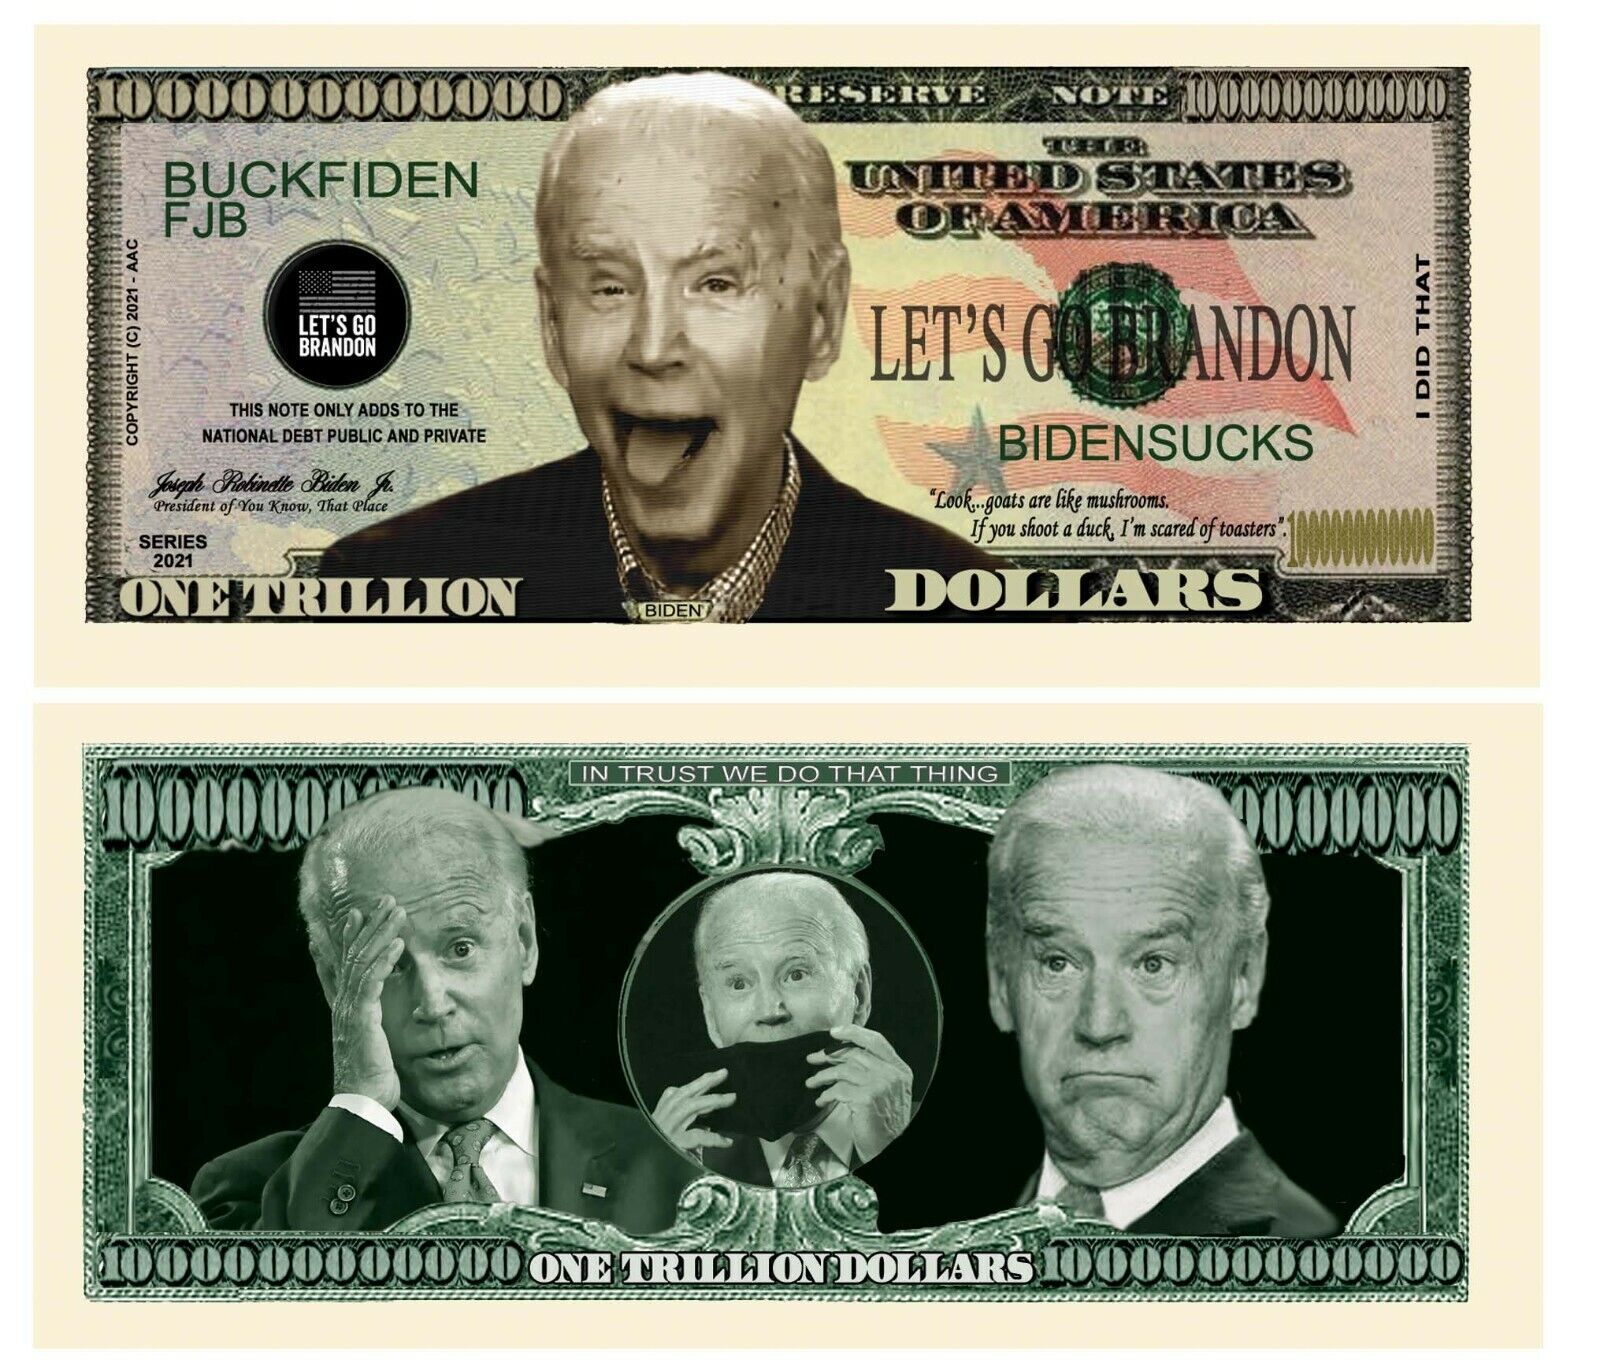 Pack of 10 - Joe Biden Sucks FJB Let's Go Brandon MAGA Novelty Dollar Bills